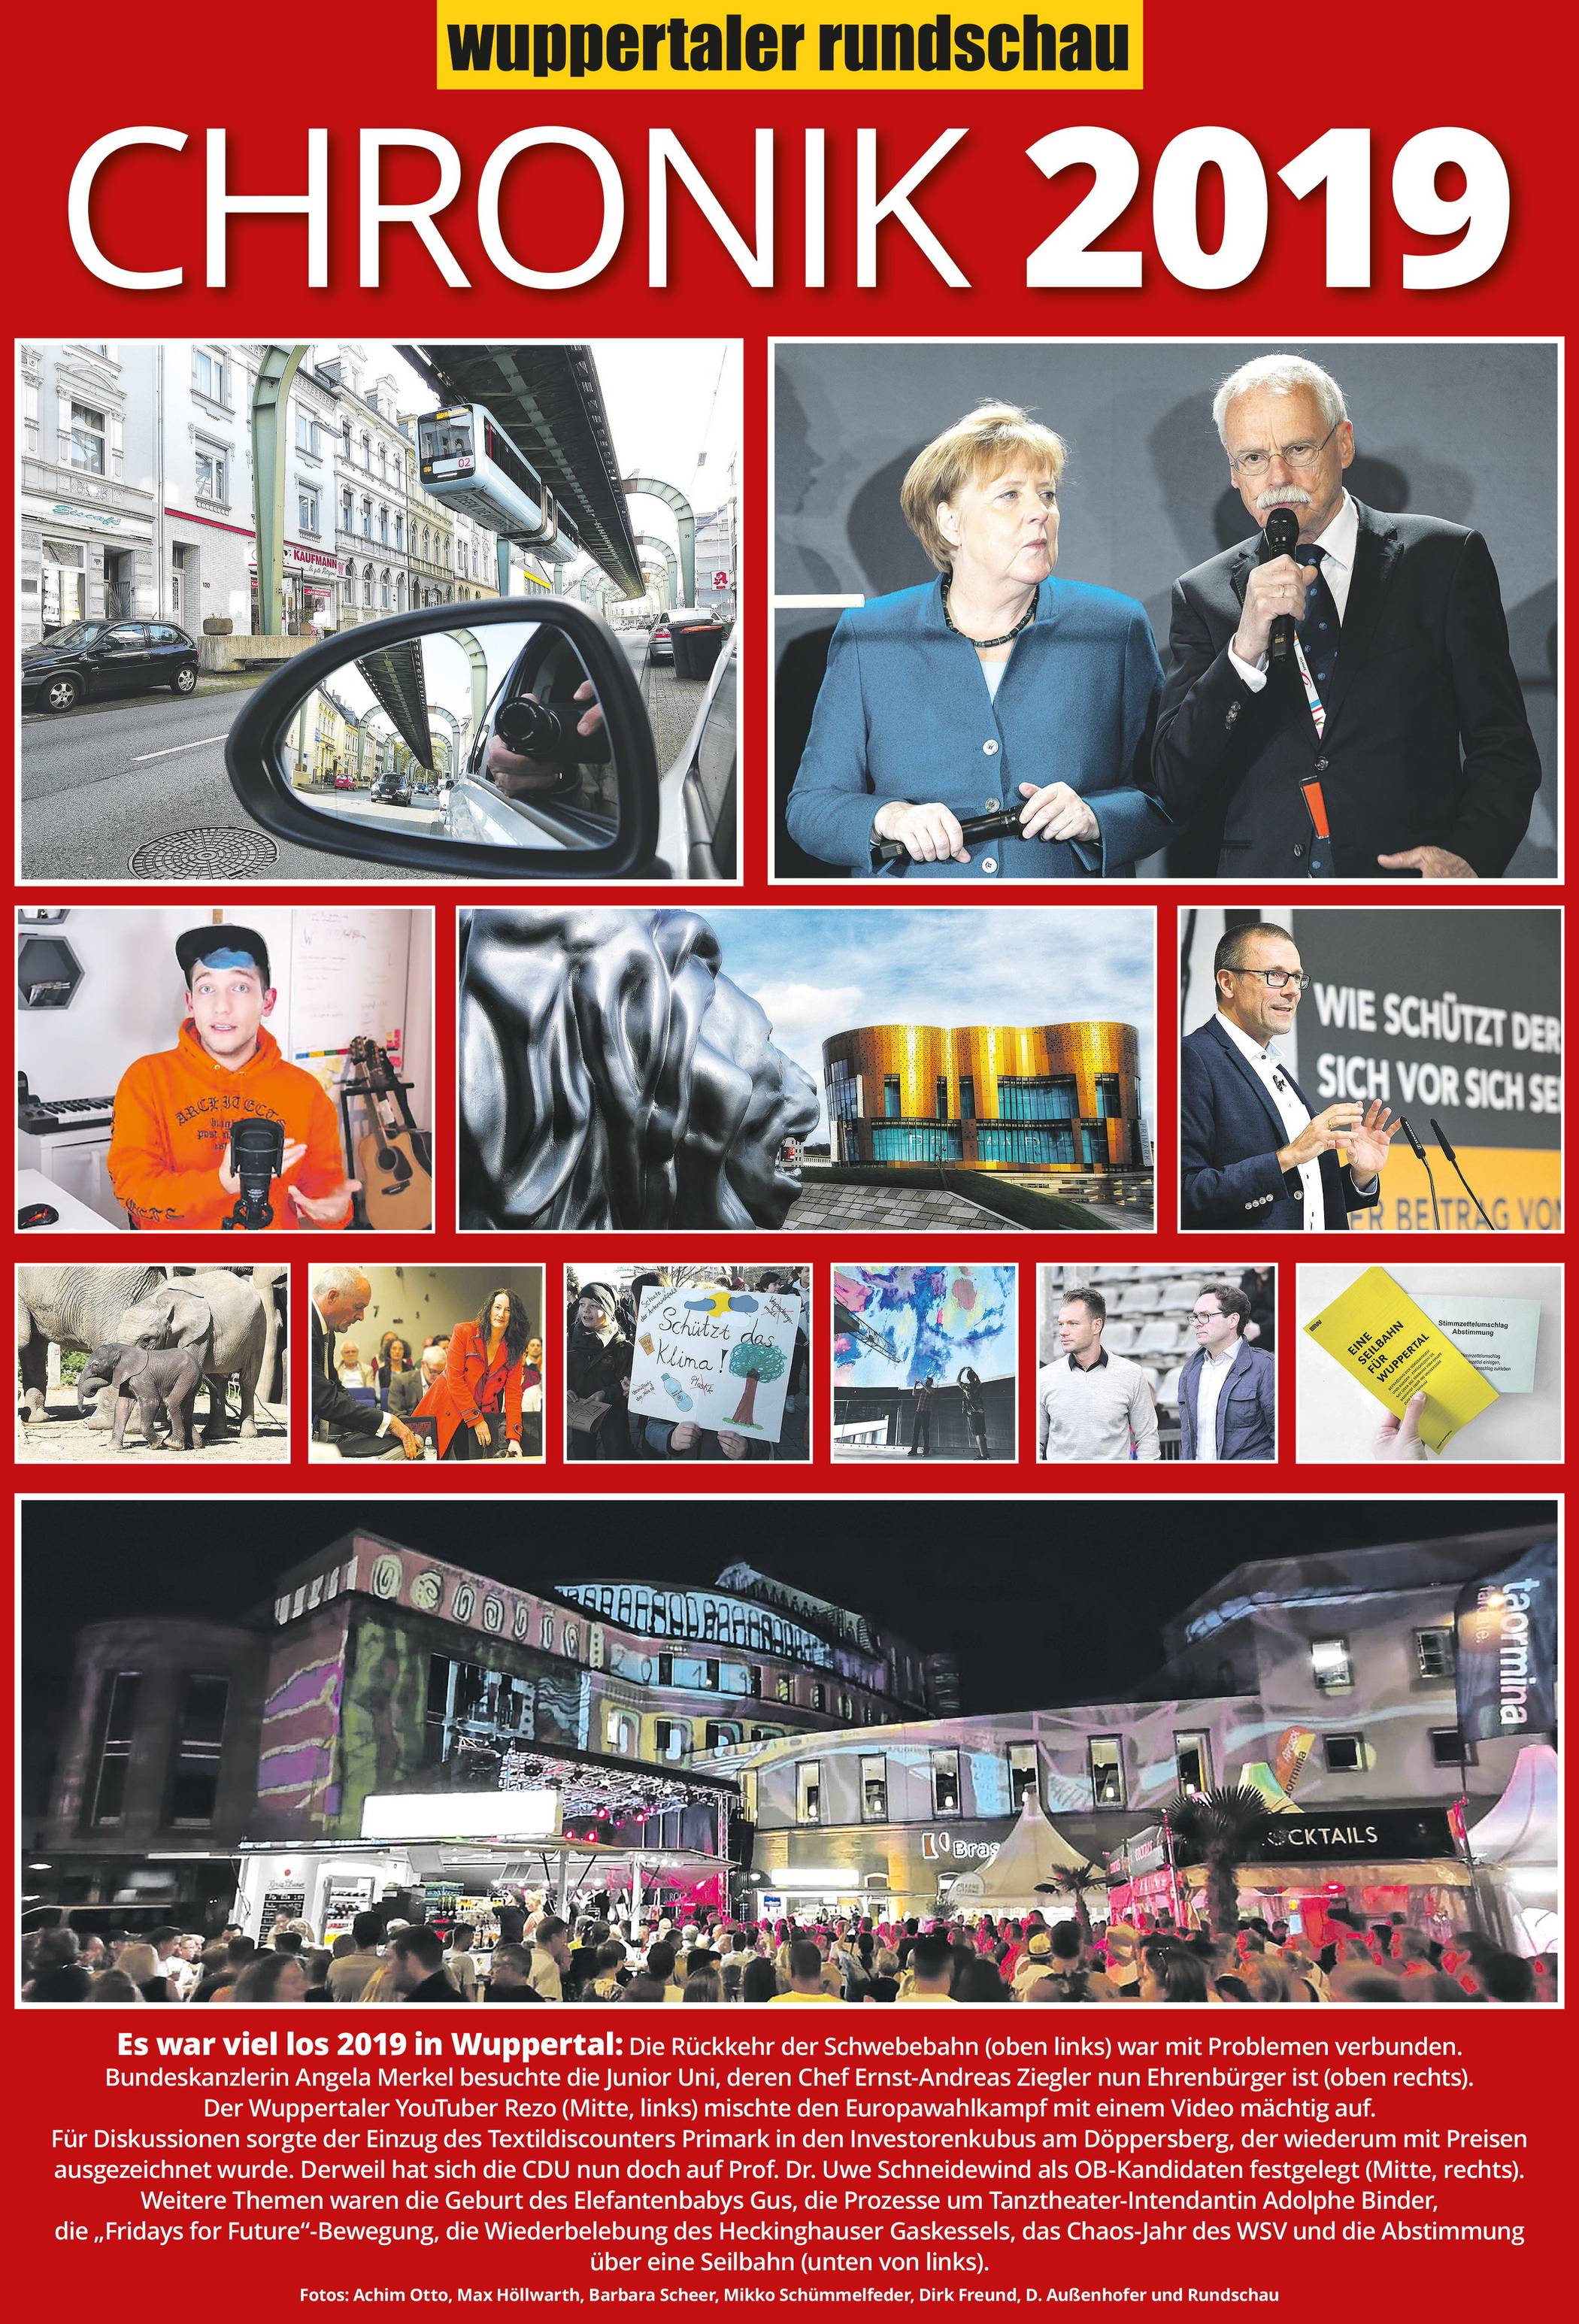 Wuppertals Chronik 2019: V wie vorbei